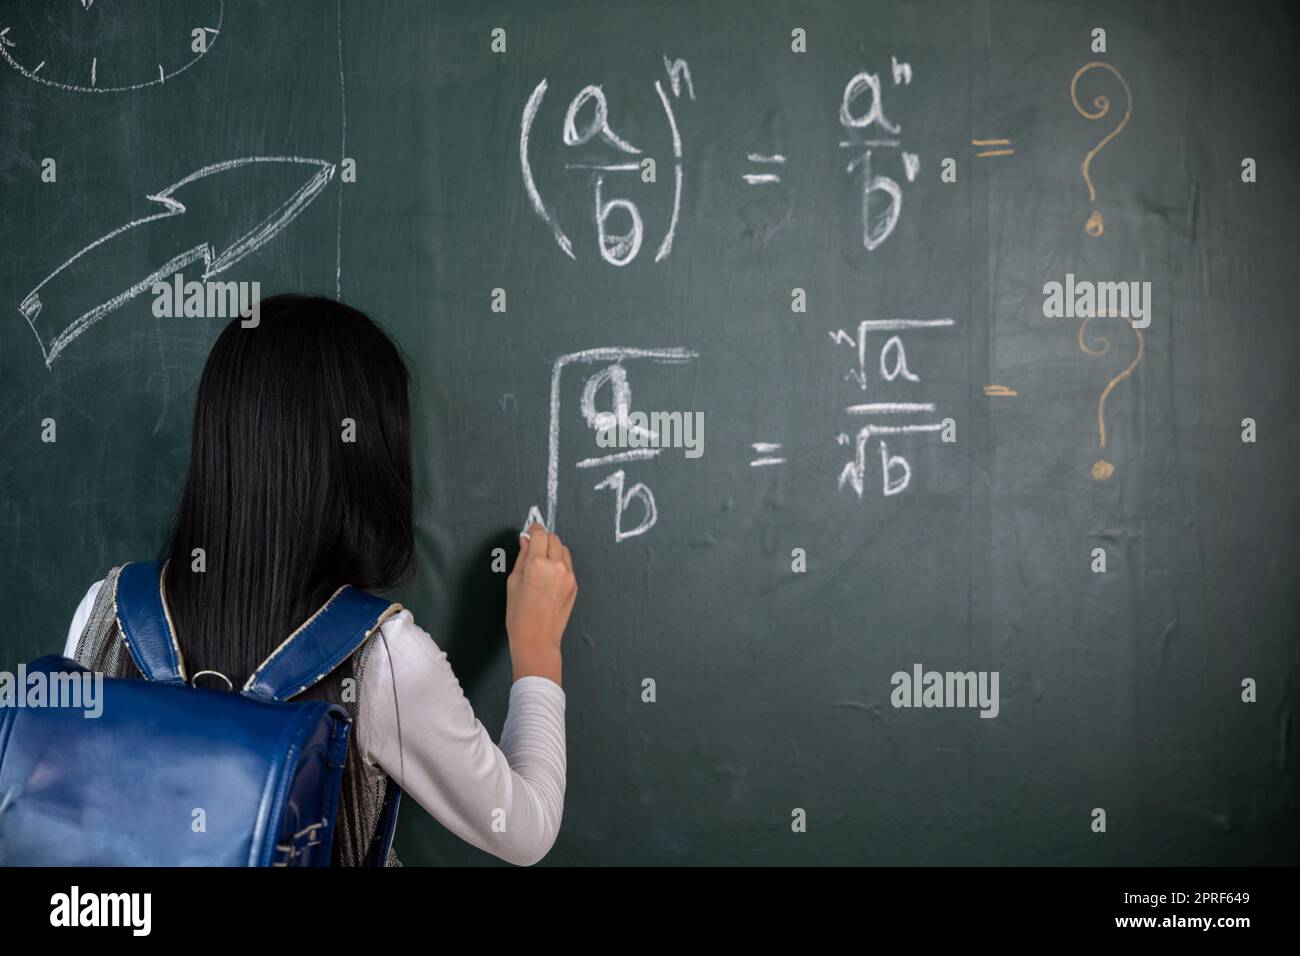 Rückansicht eines Schulmädchens auf Naturwissenschaftsunterricht im Klassenzimmer. Schreib eine Antwort an die Tafel Stockfoto